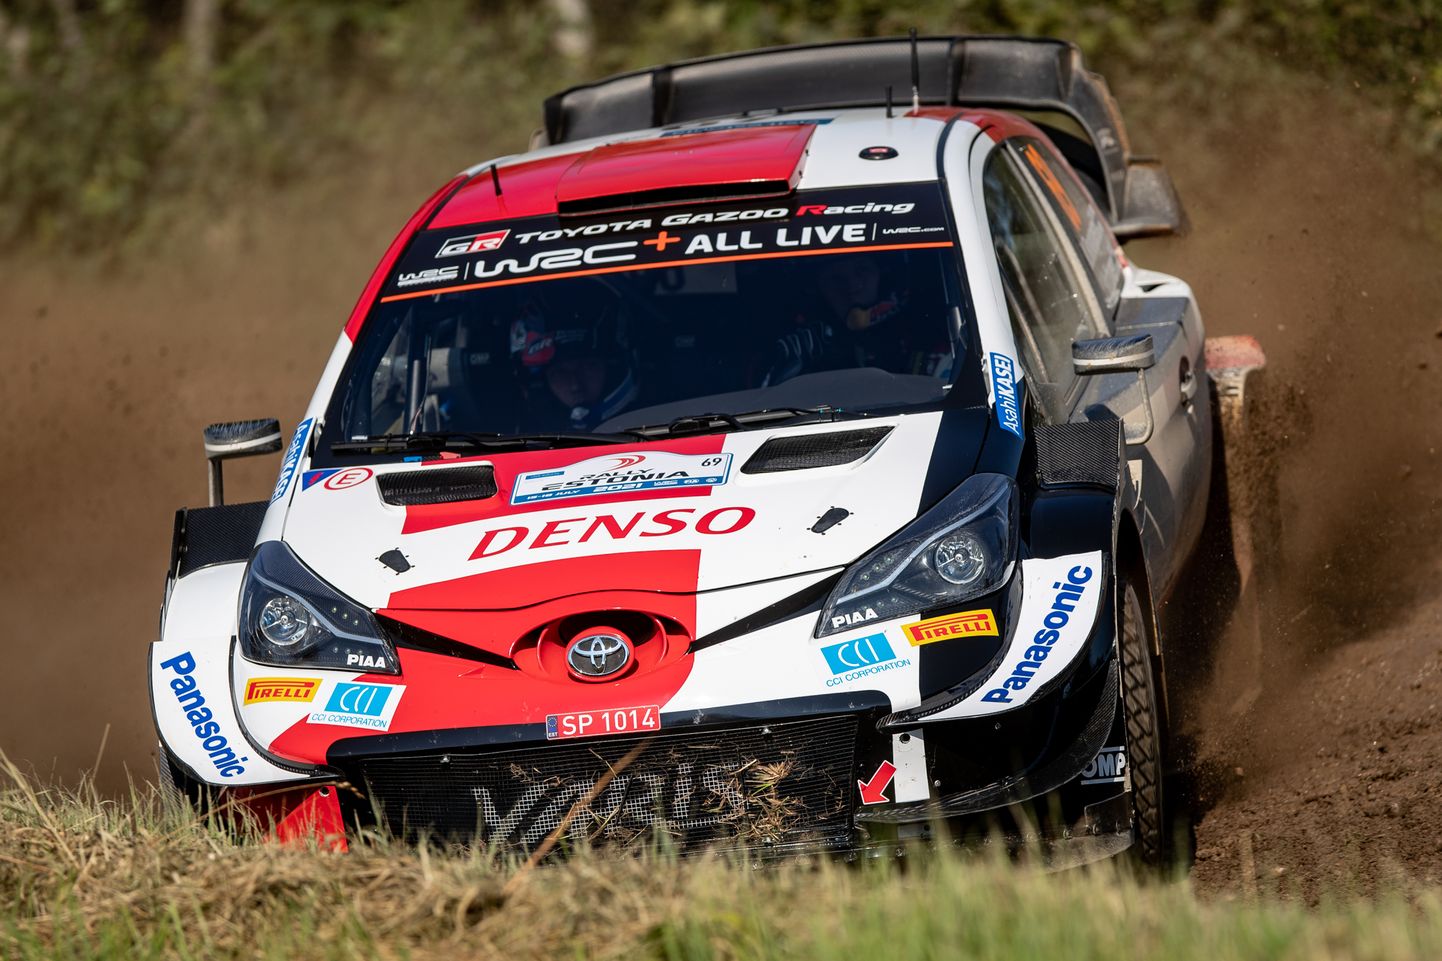 Seda, kas emb-kumb uutest sõitjatest jõuab lõpuks ka Toyota Yaris Rally1-auto rooli, näitab aeg.